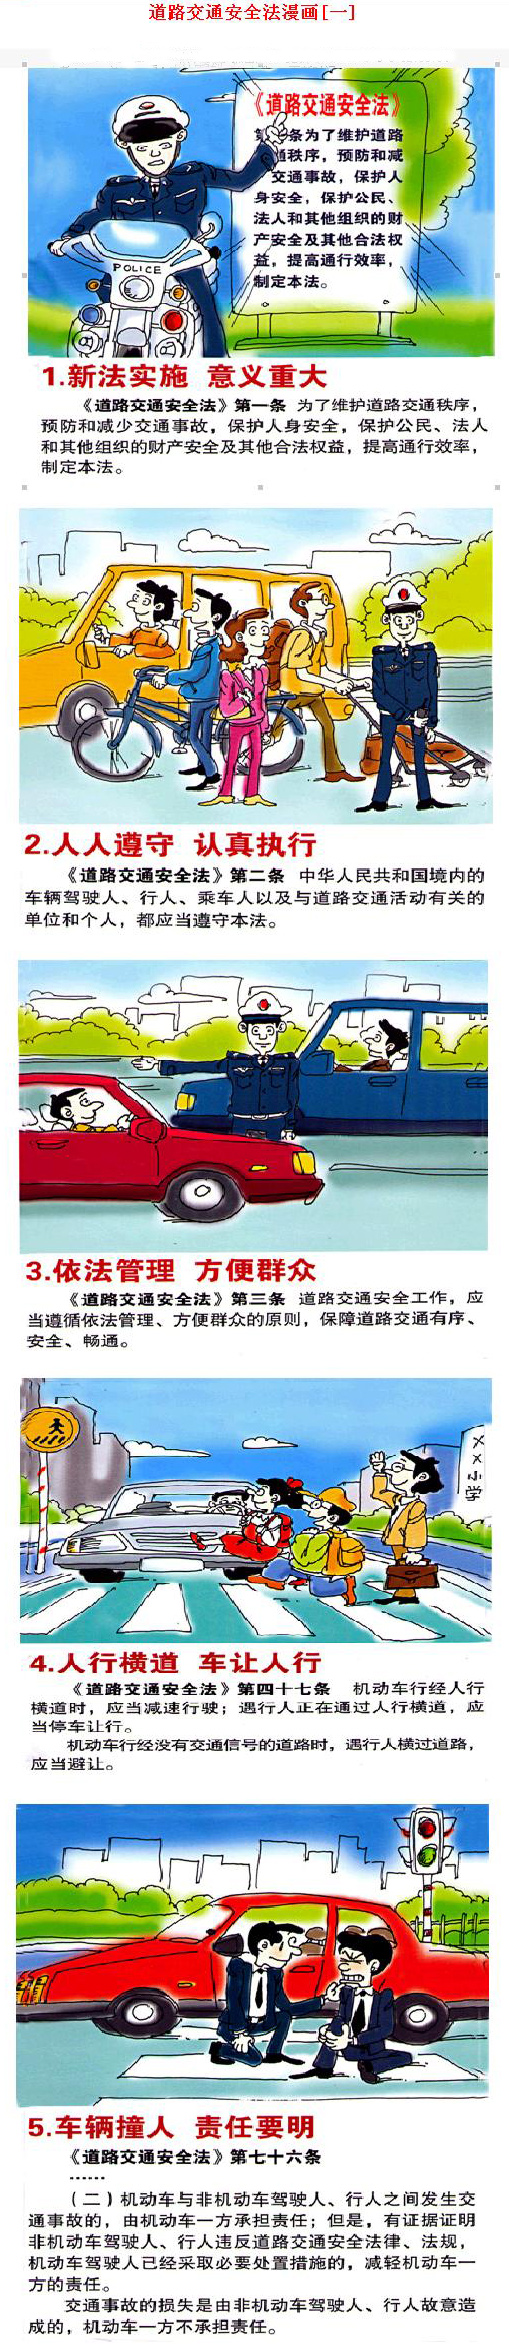 道路交通安全法漫畫(圖1)